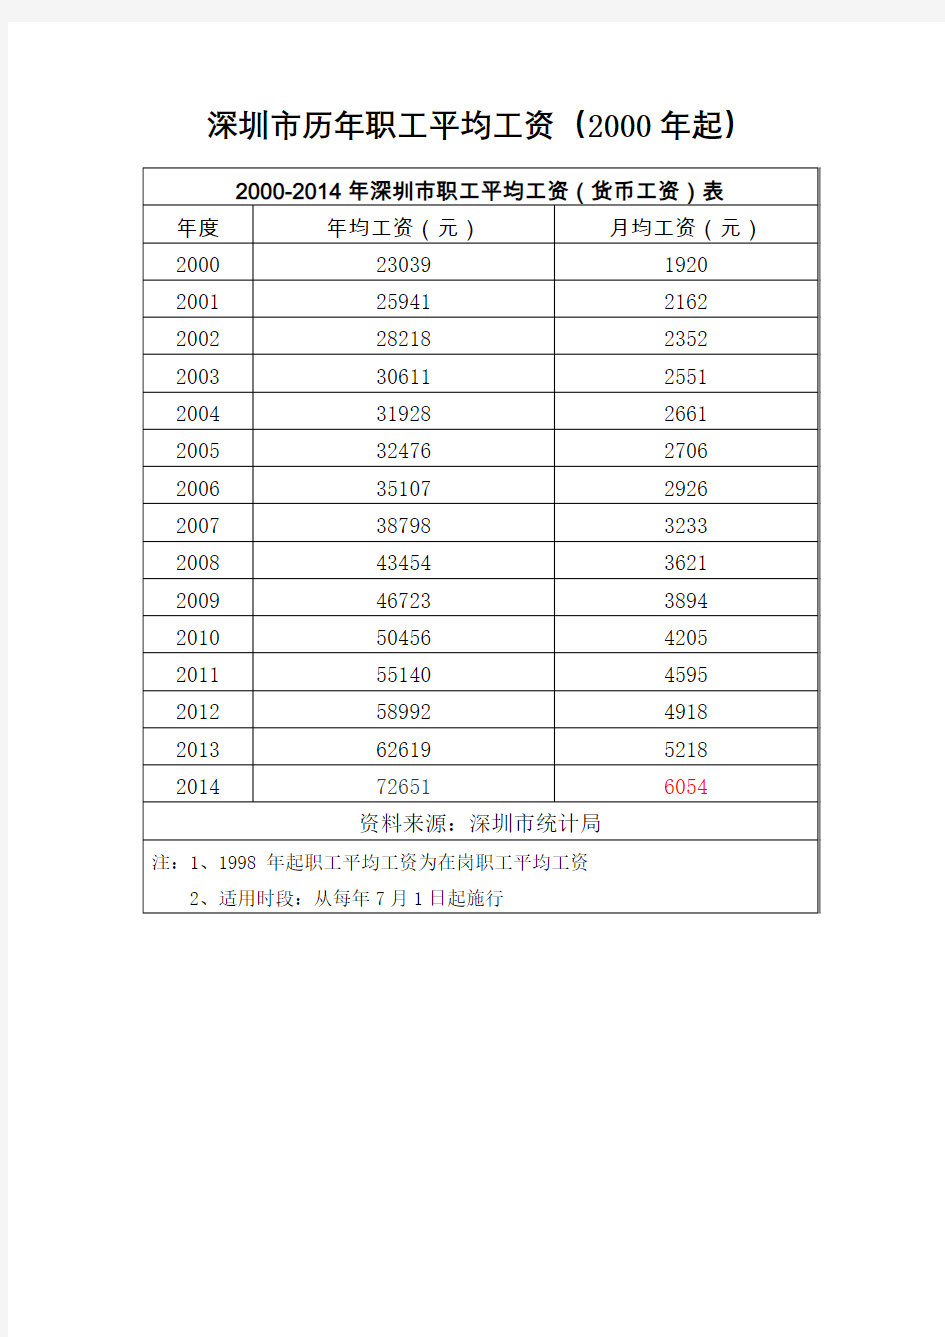 深圳市历年职工平均工资年起完整版